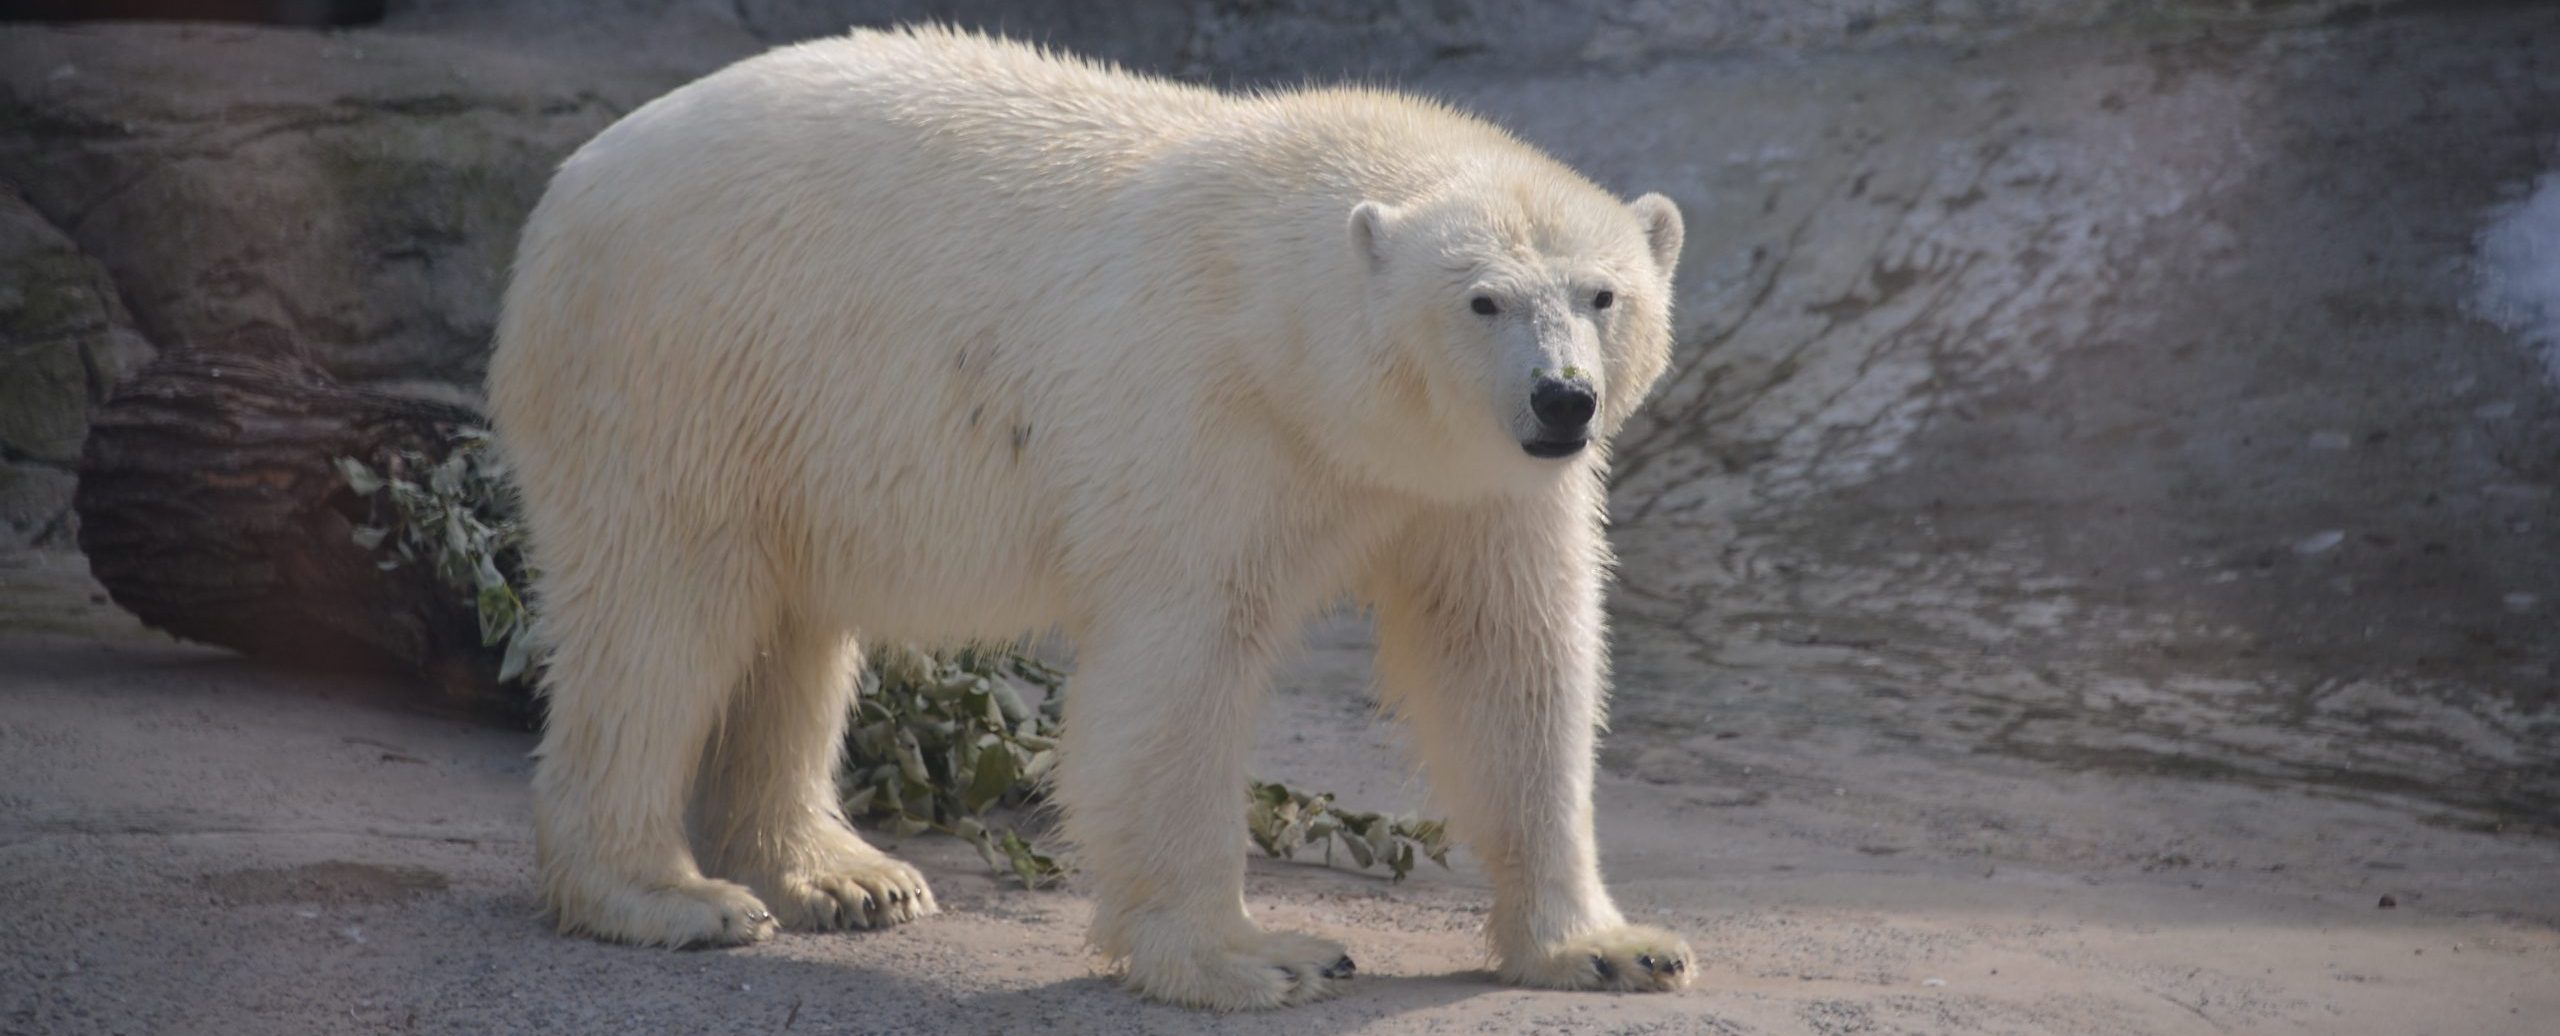 Смотрители Московского зоопарка подарили белому медведю Диксону новую игрушку, - пишет caoinform.moscow